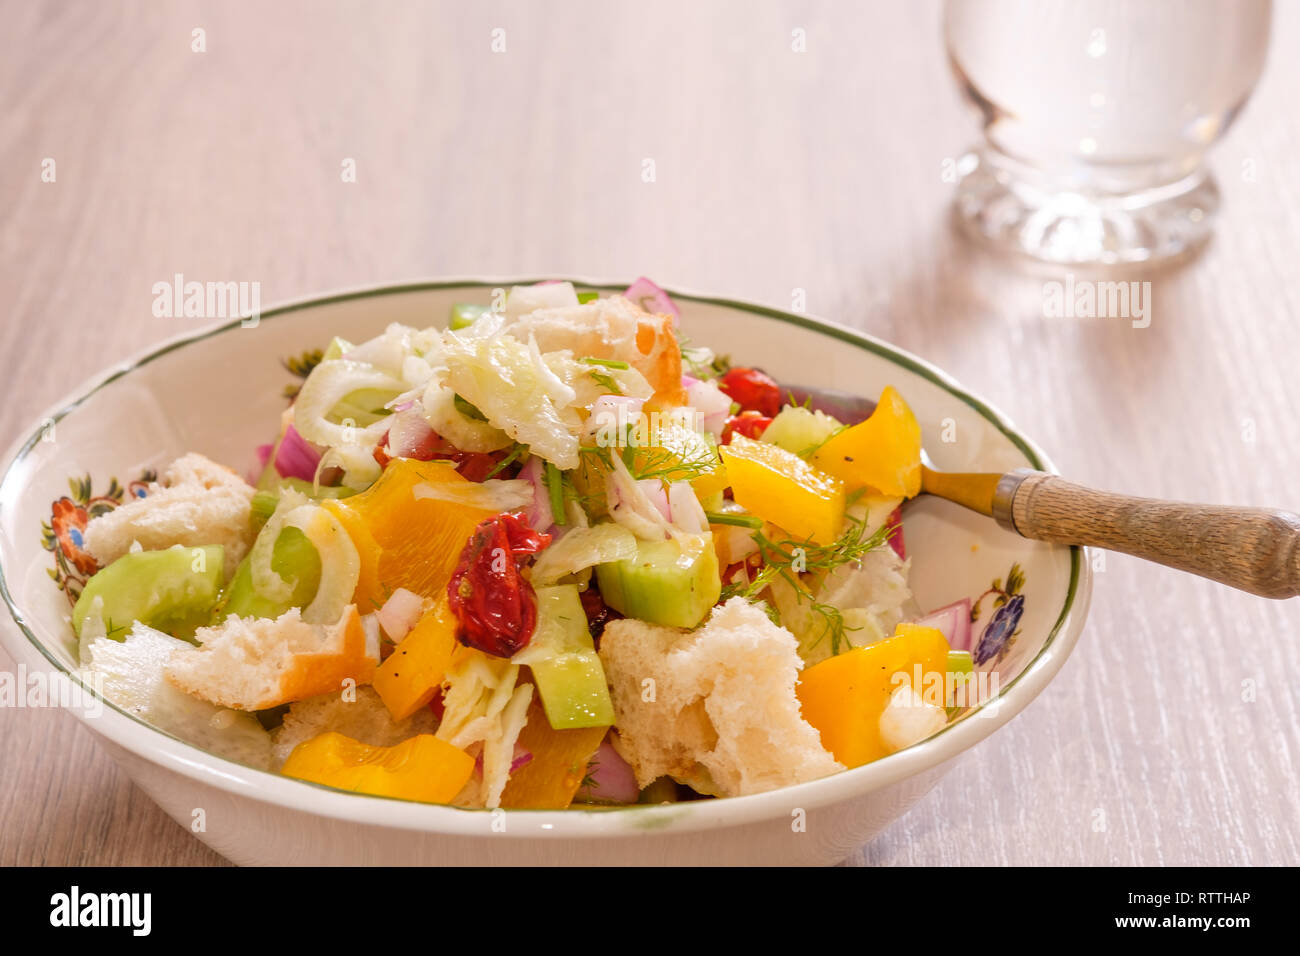 Pain italien panzanella salade dans un bol avec une fourchette sur la table Banque D'Images